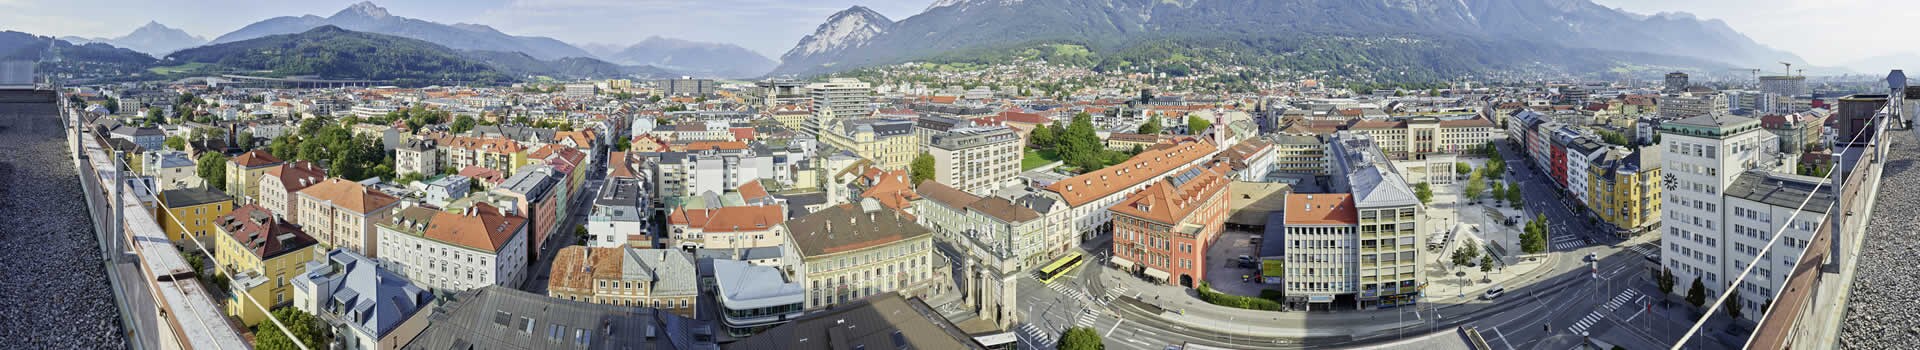 Madrid - Innsbruck